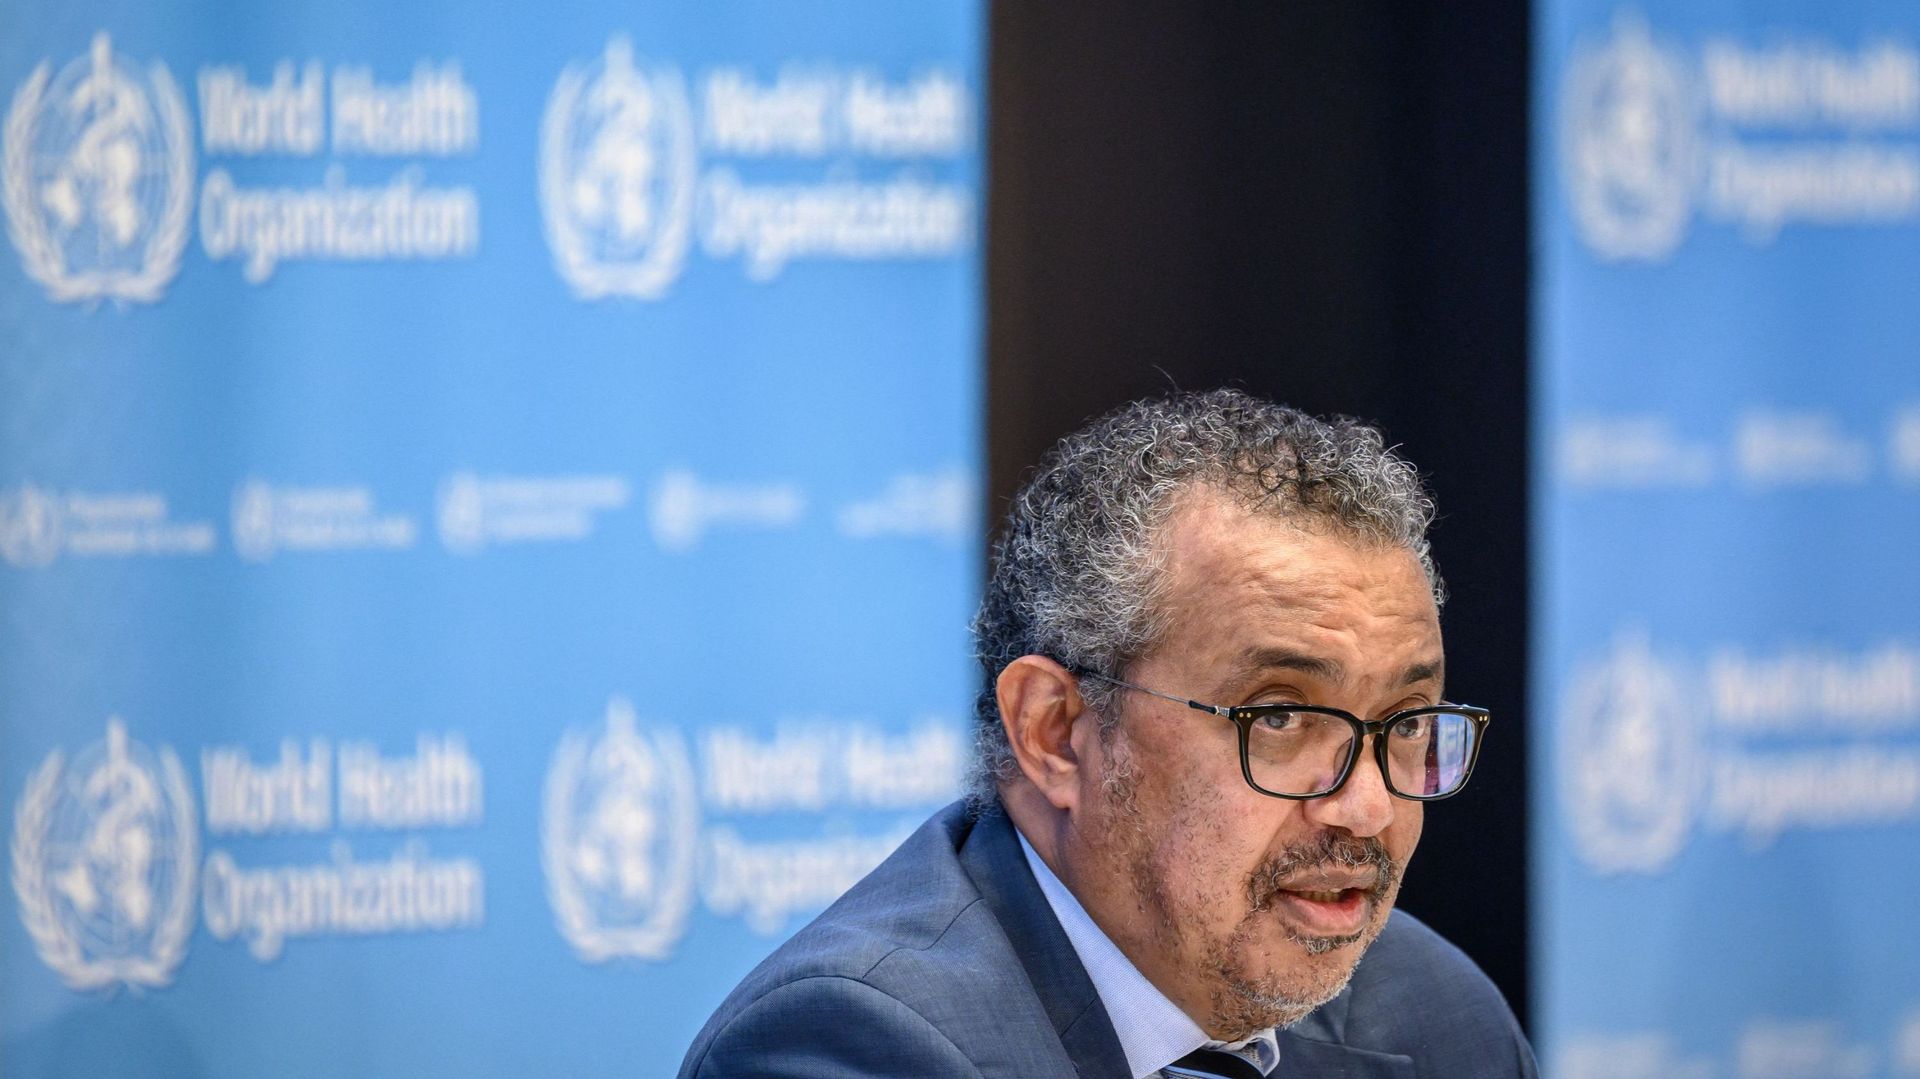 Le directeur général de l'Organisation mondiale de la santé (OMS), Tedros Adhanom Ghebreyesus, assiste à une conférence de presse le 20 décembre 2021 au siège de l'OMS à Genève.